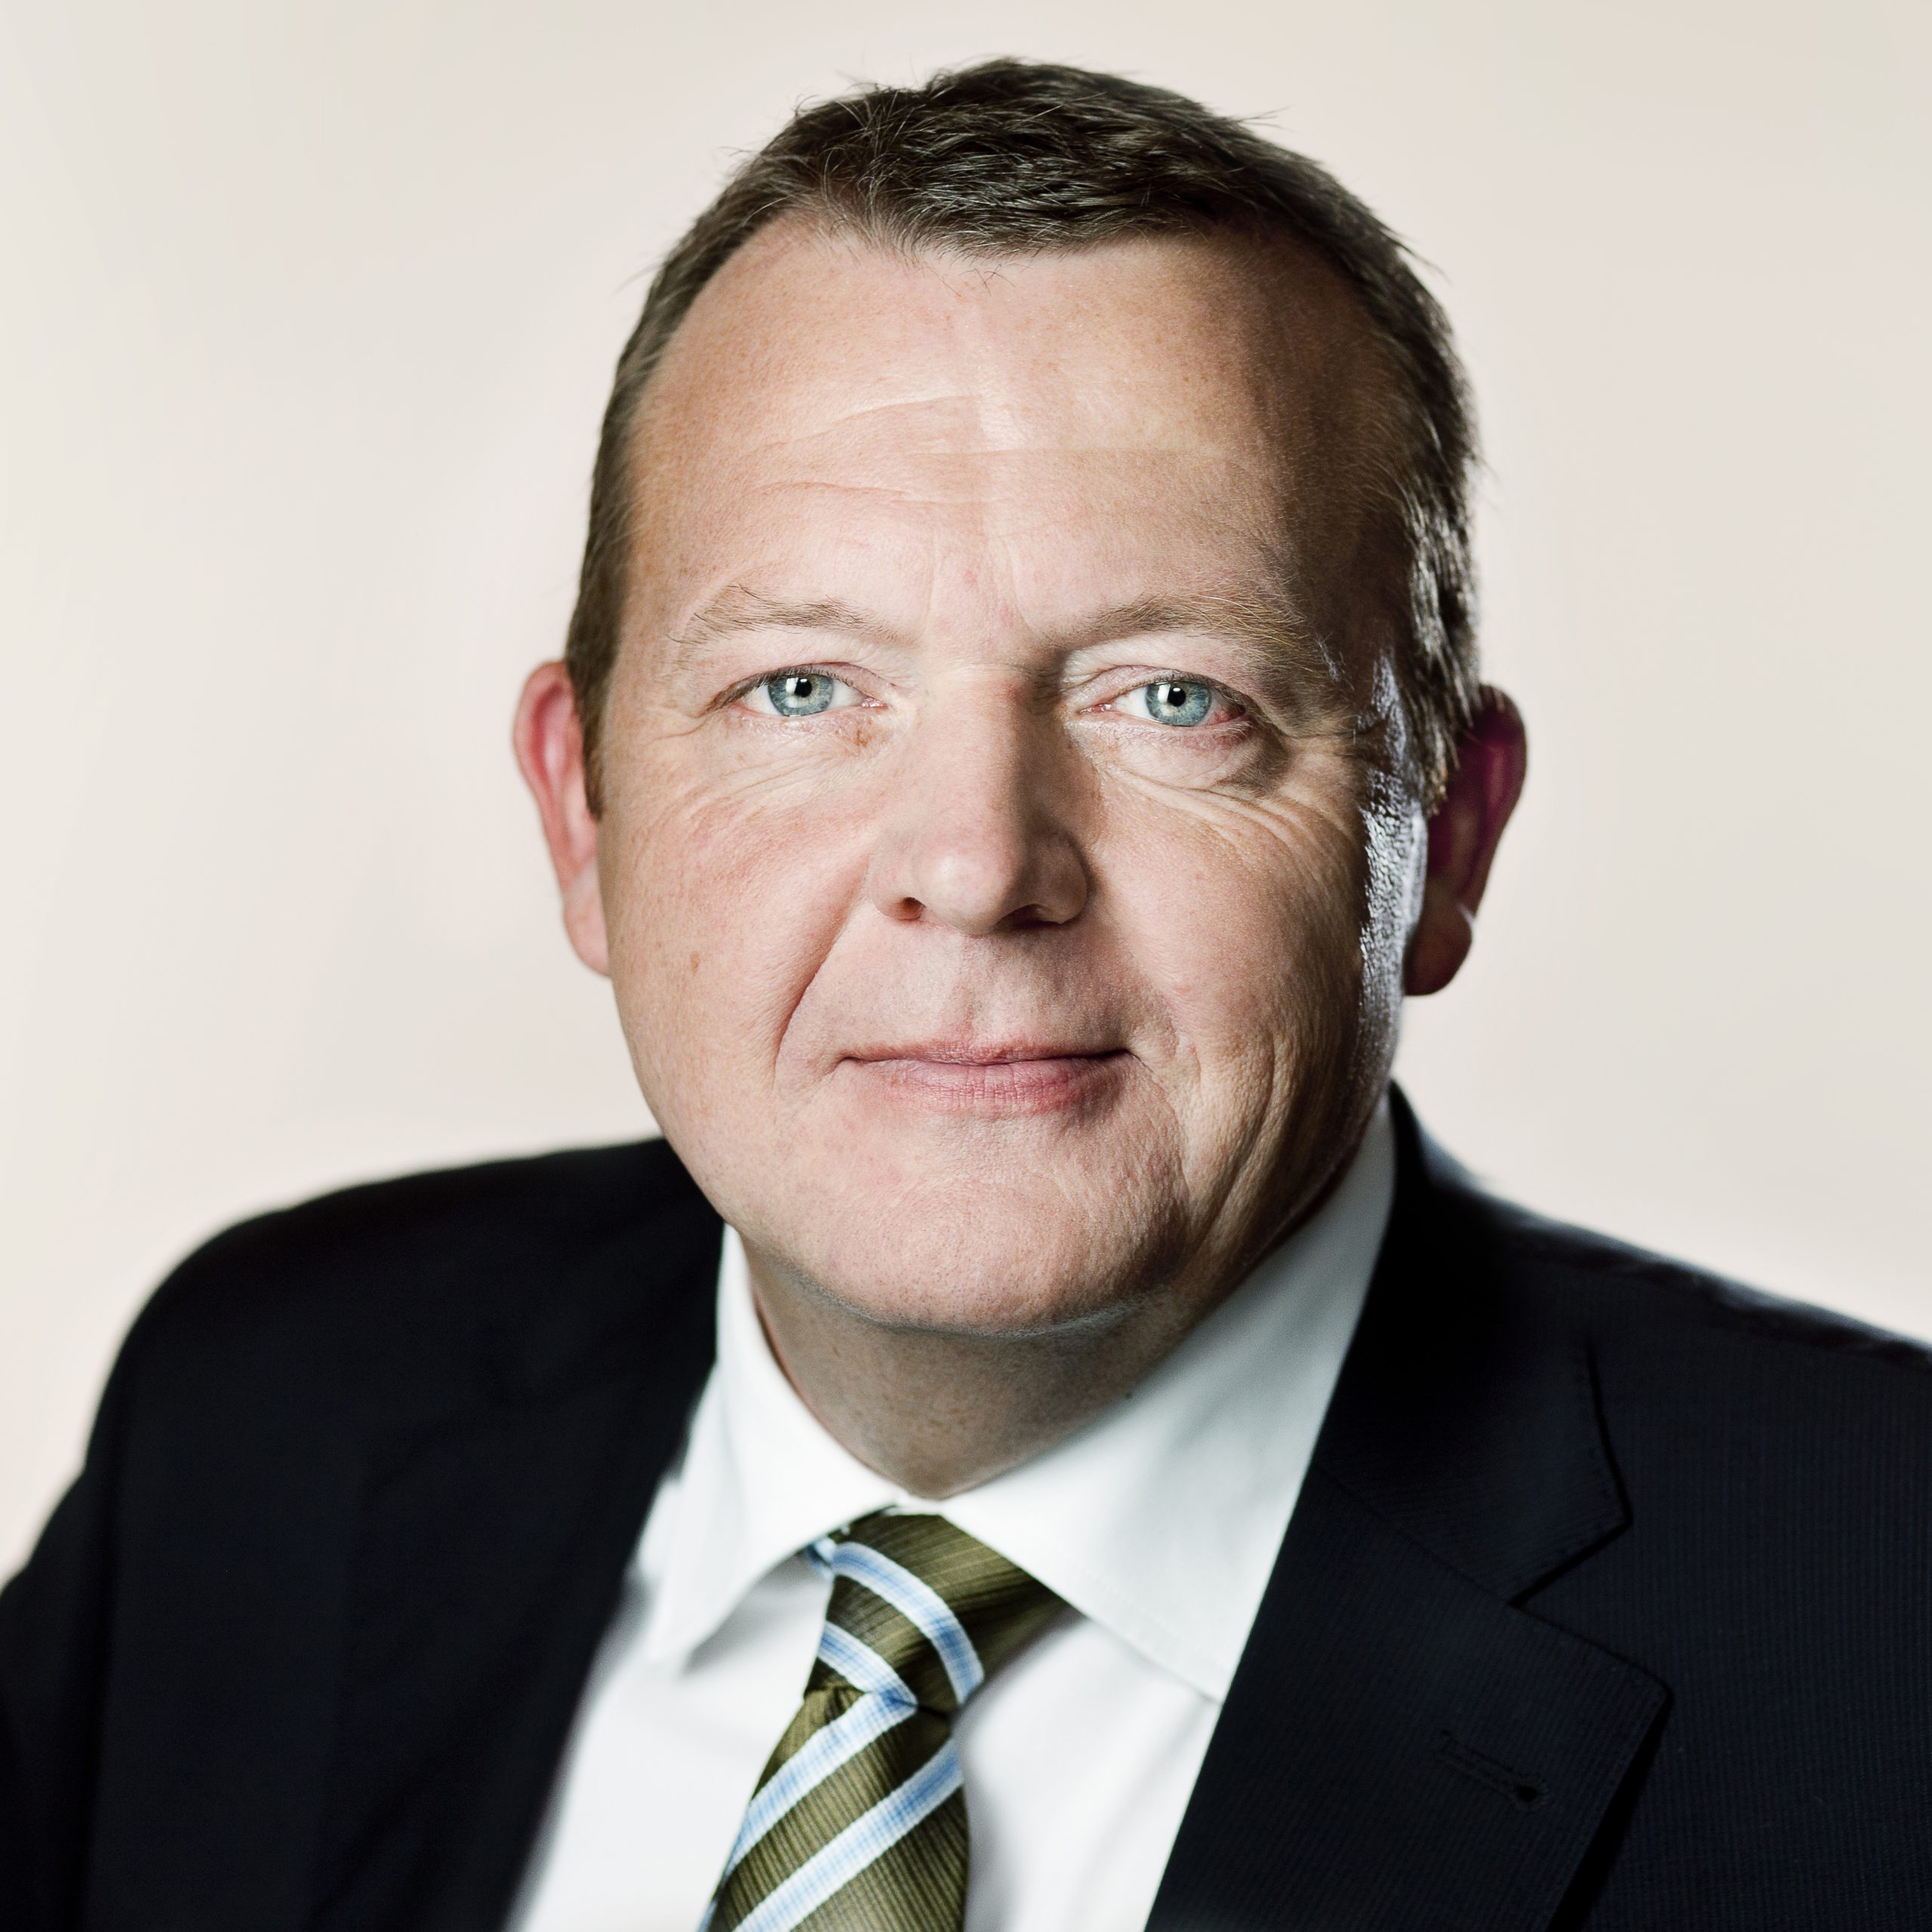 Lars Løkke Rasmussen, Venstre